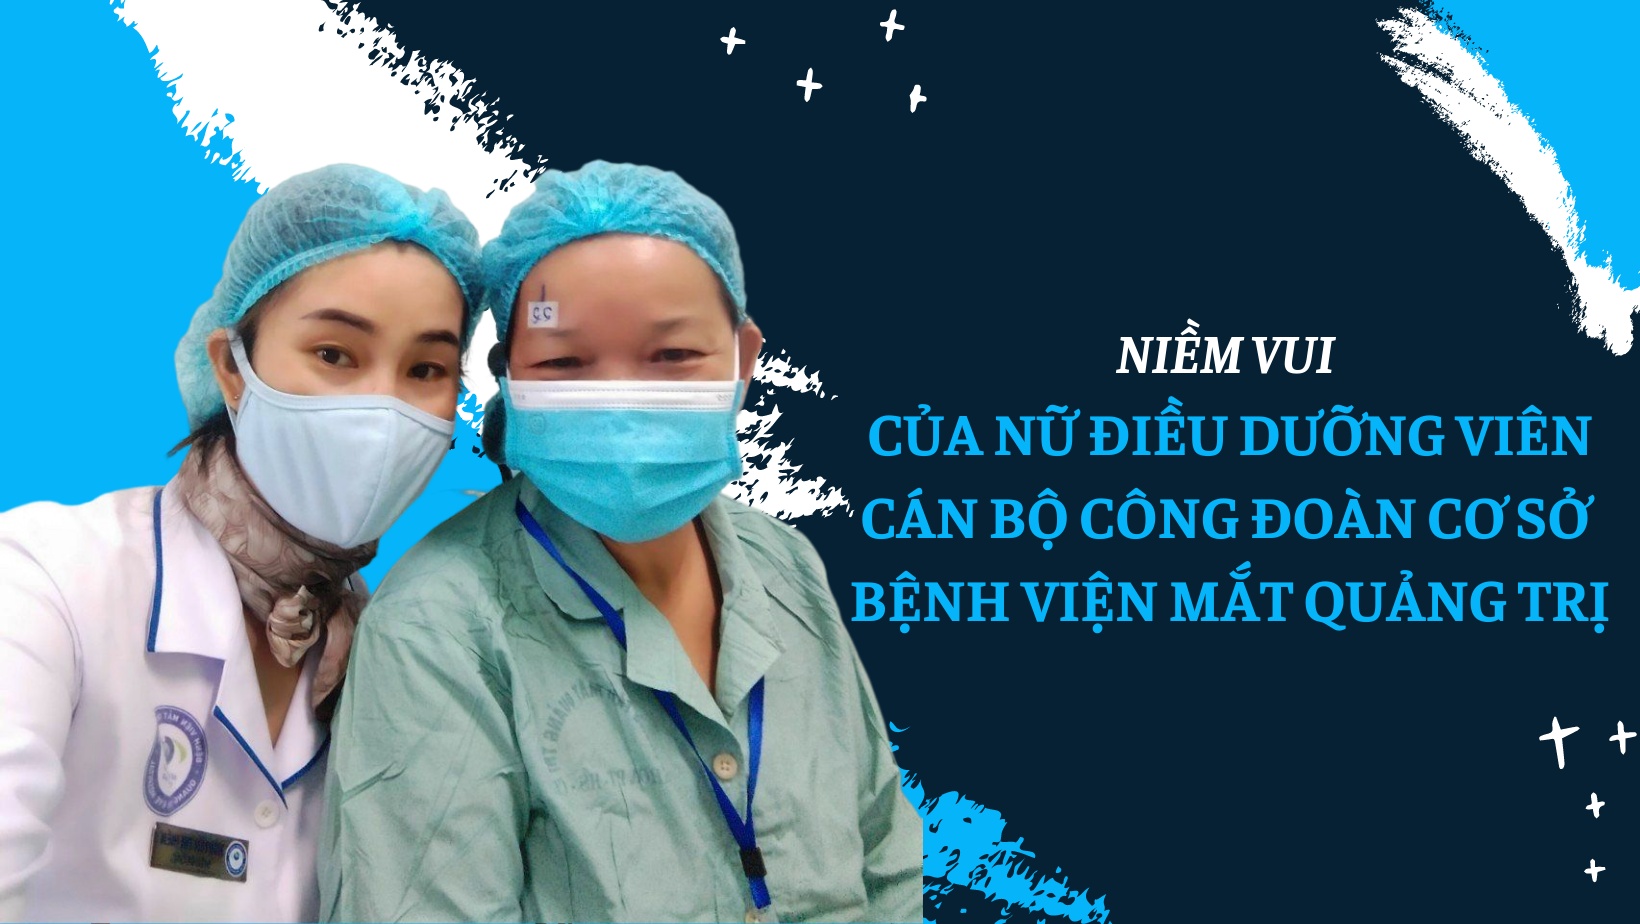 Niềm vui của nữ điều dưỡng viên - cán bộ công đoàn cơ sở Bệnh viện Mắt Quảng Trị